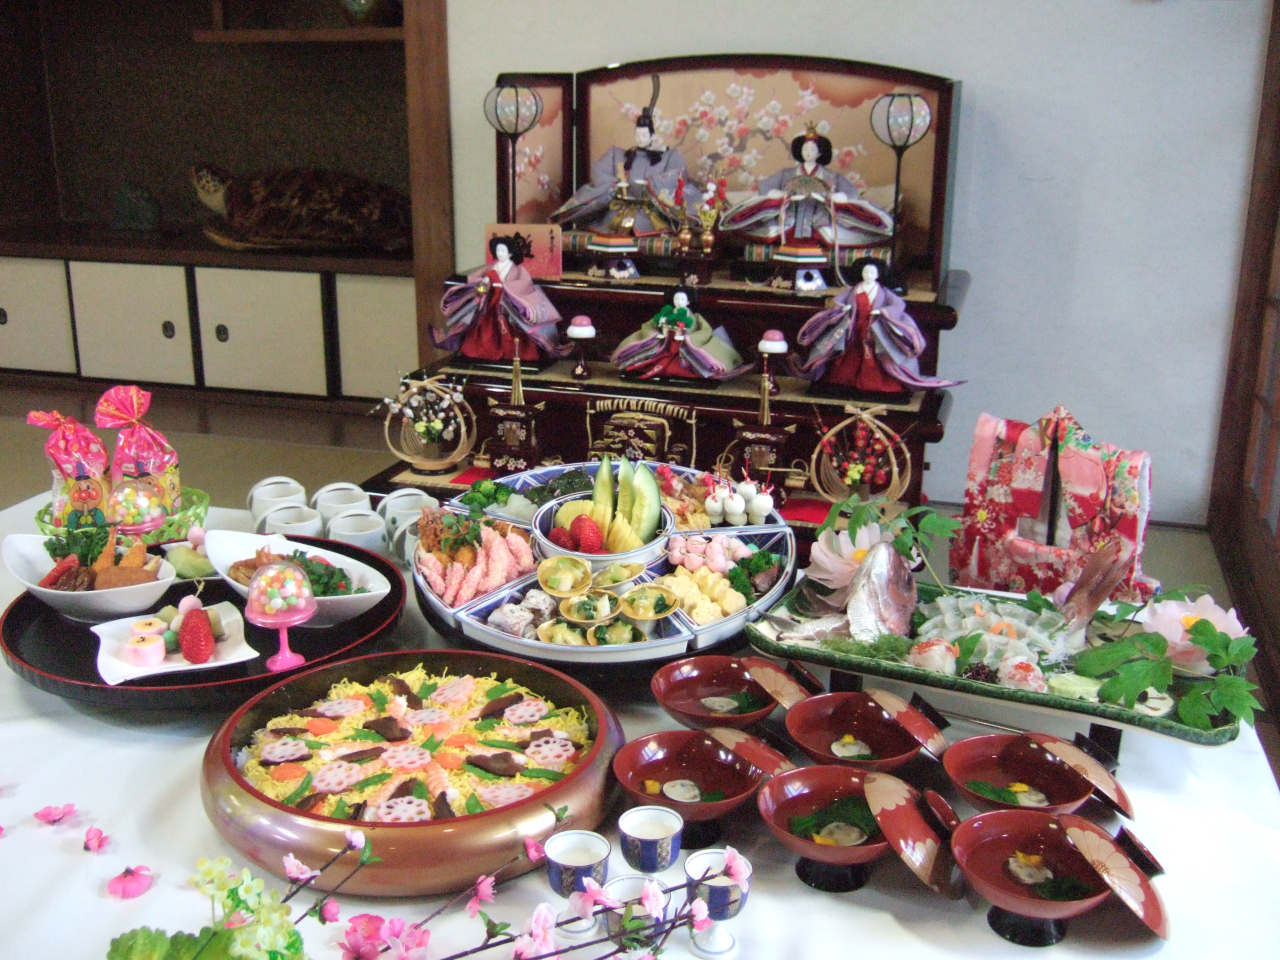 ３月３日のお雛様、桃の節句は中谷のデコ寿司でお祝いしましょう。